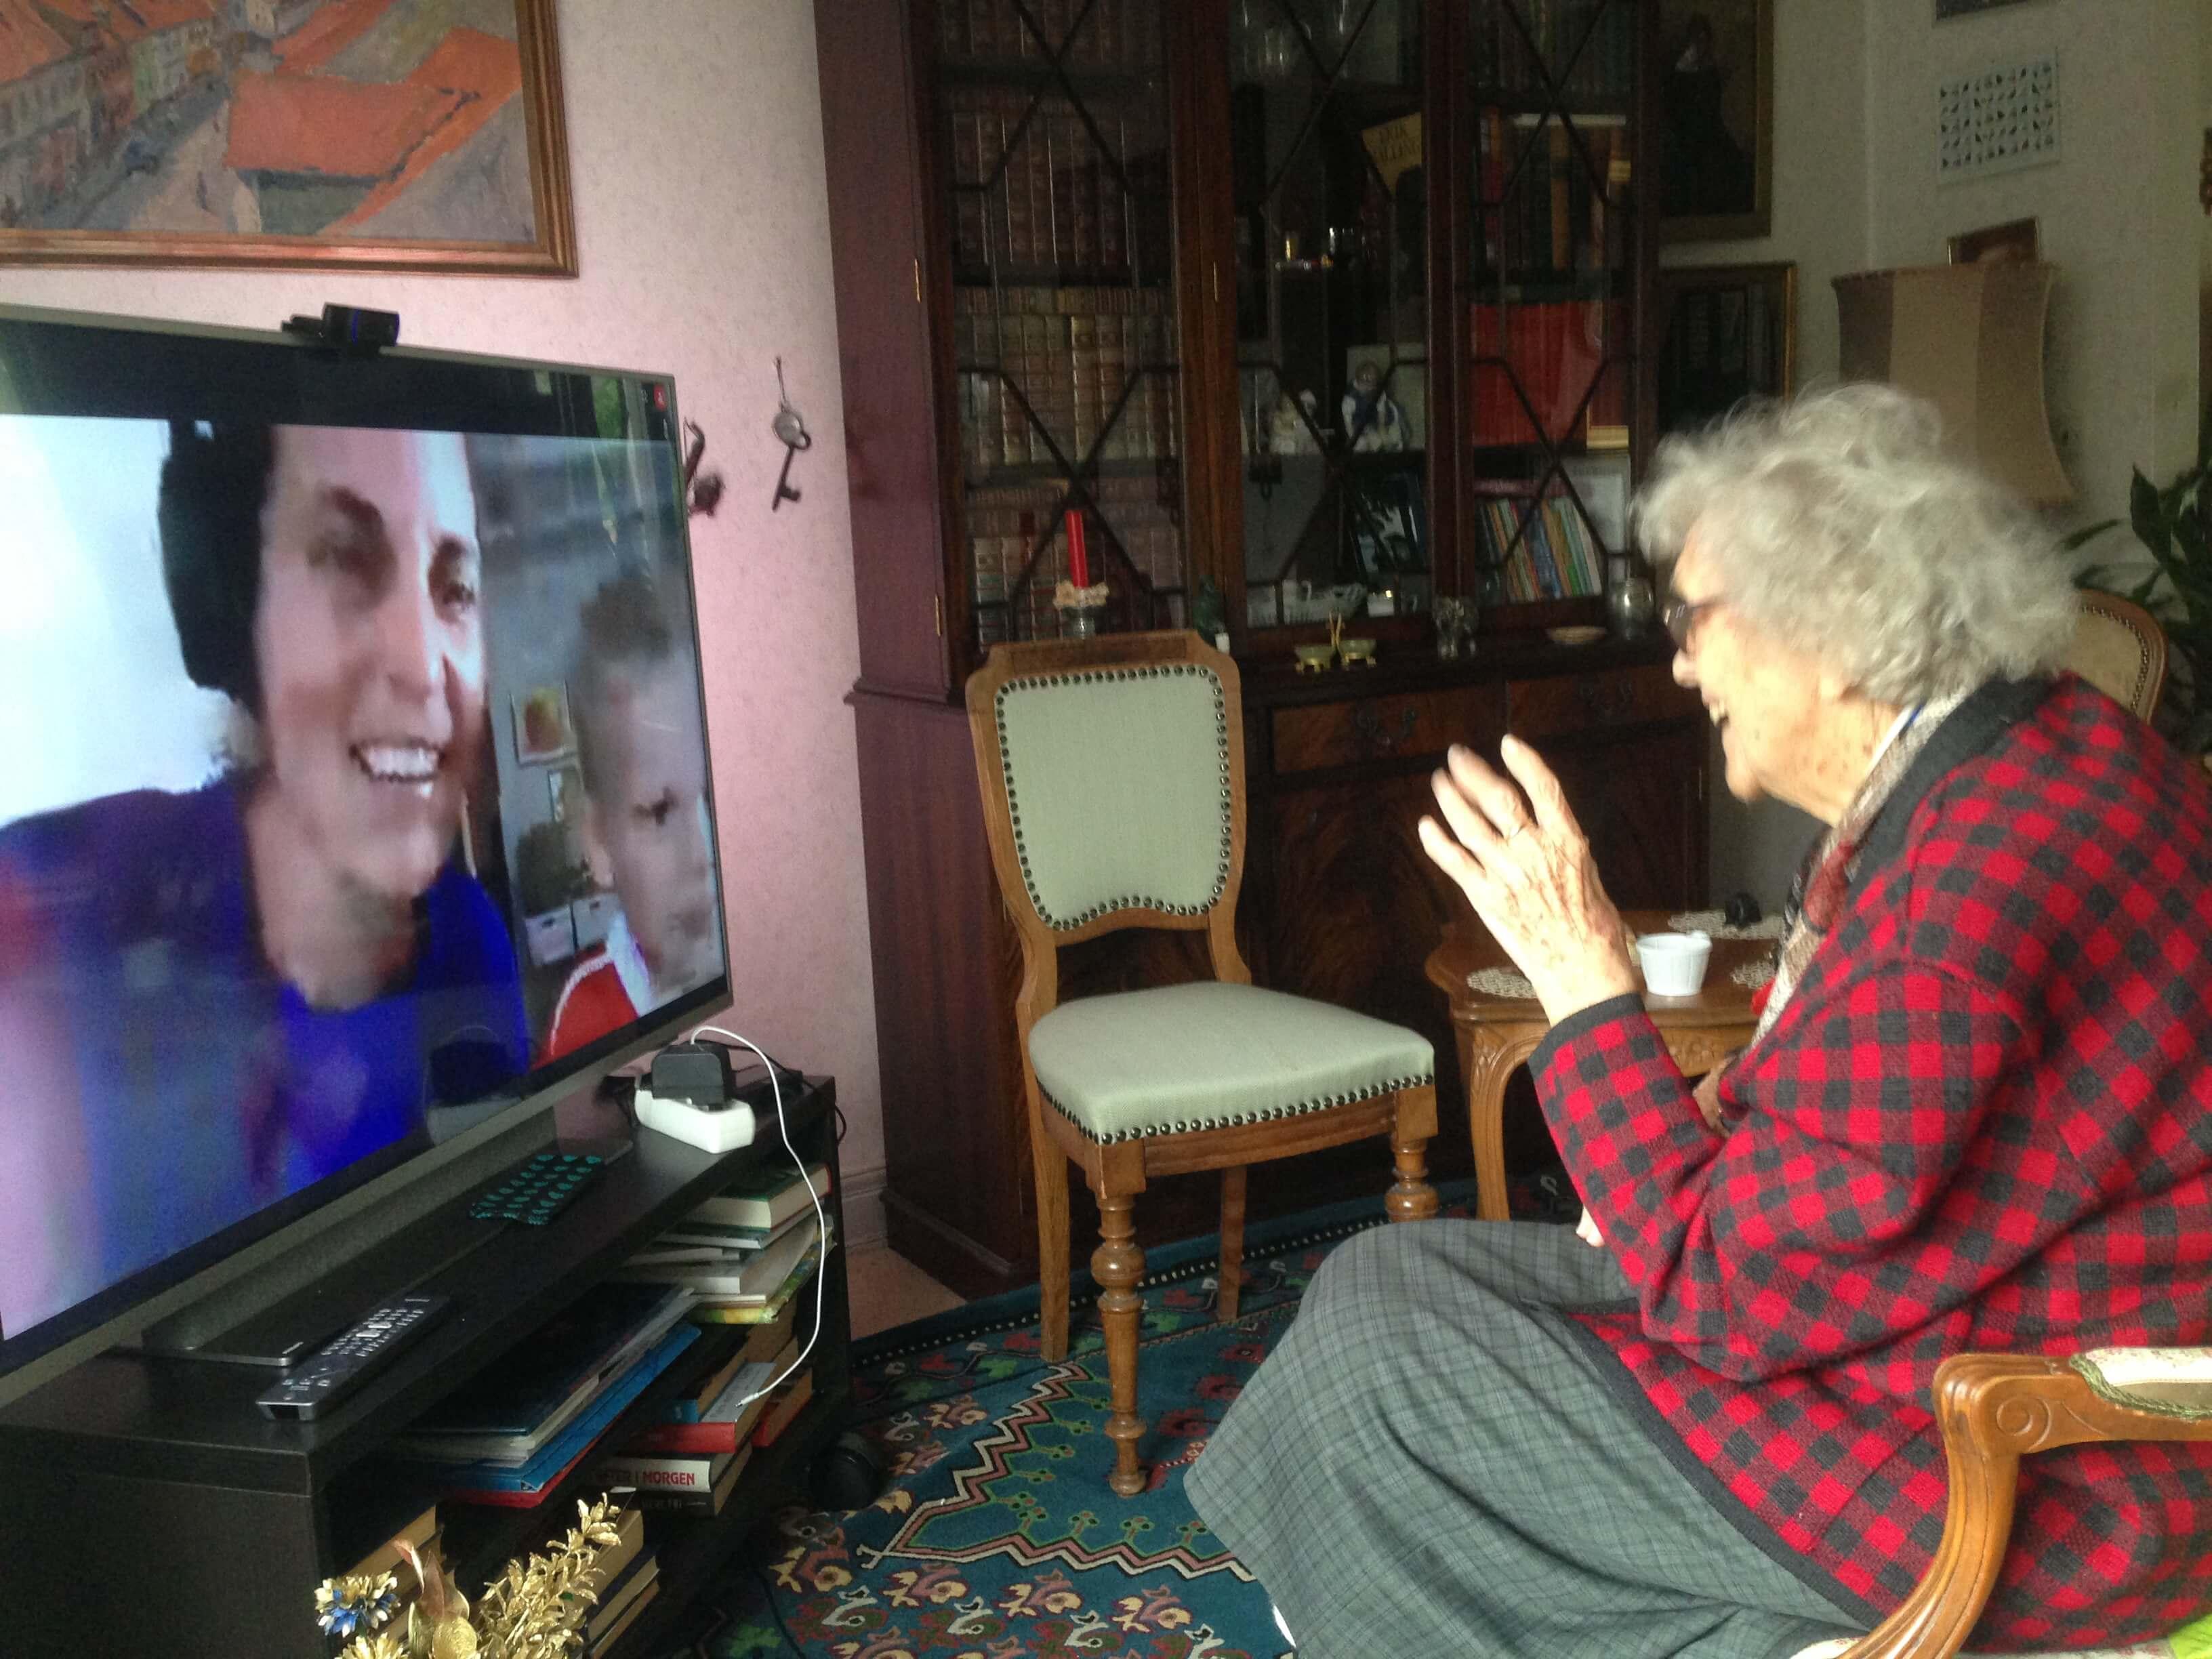 98-årige Elna Fuglsang i Odense trodser den teknologiske genrationskløft og mødes ubesværet med sin familie overalt i landet takket være den simple teknologi “Videolink, der hverken kræver hjælp eller overvågning.